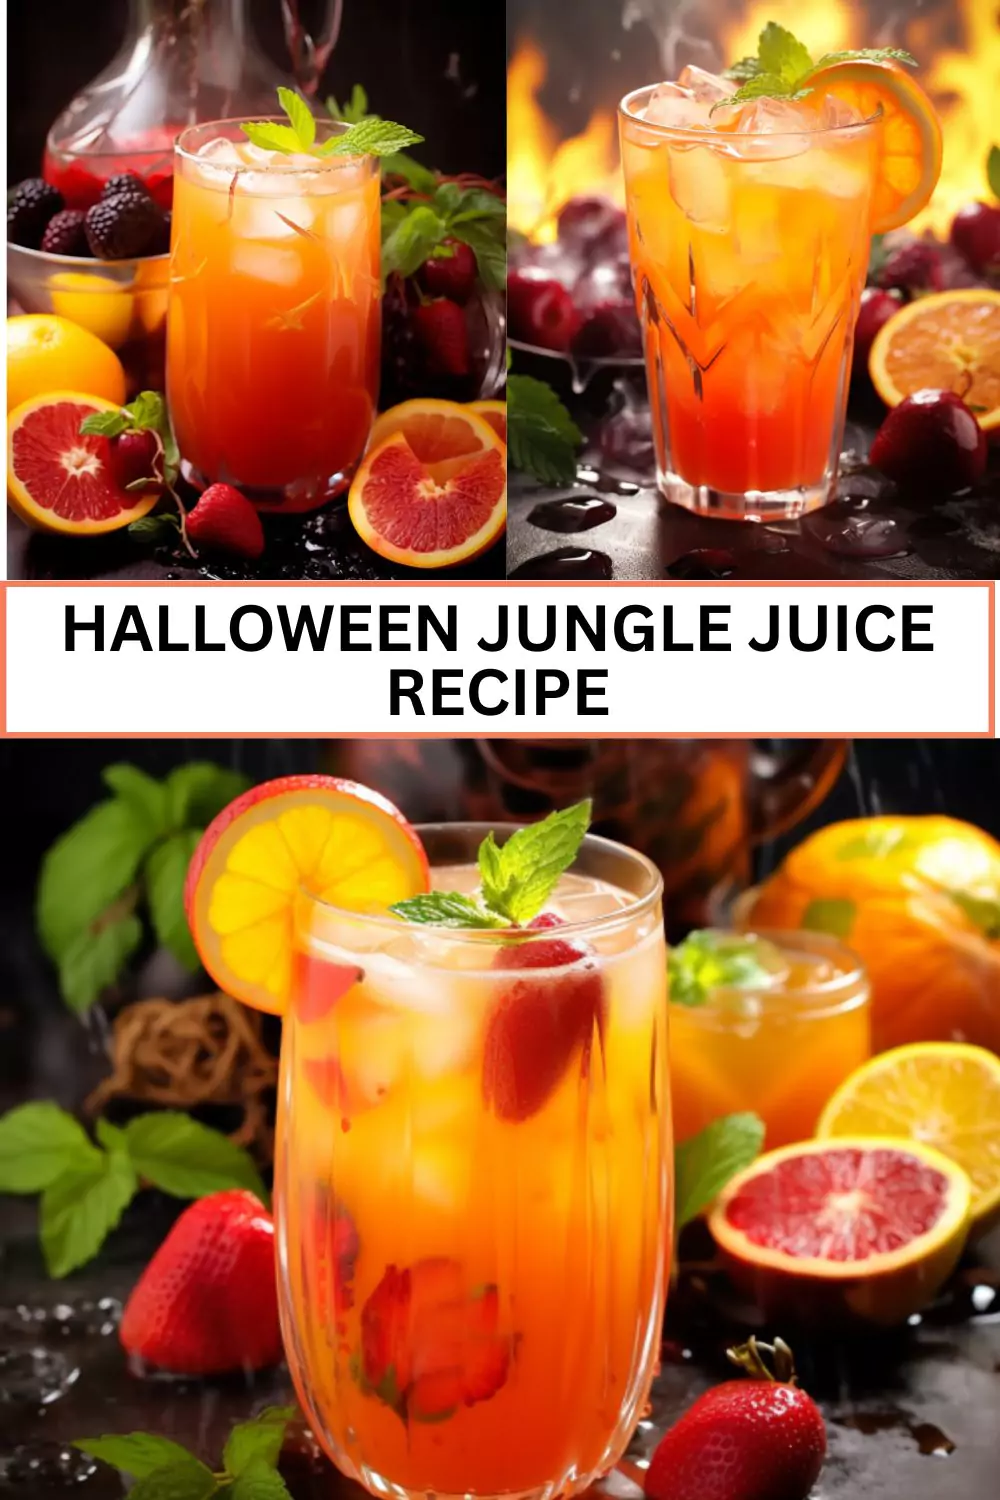 Best Halloween Jungle Juice Recipe